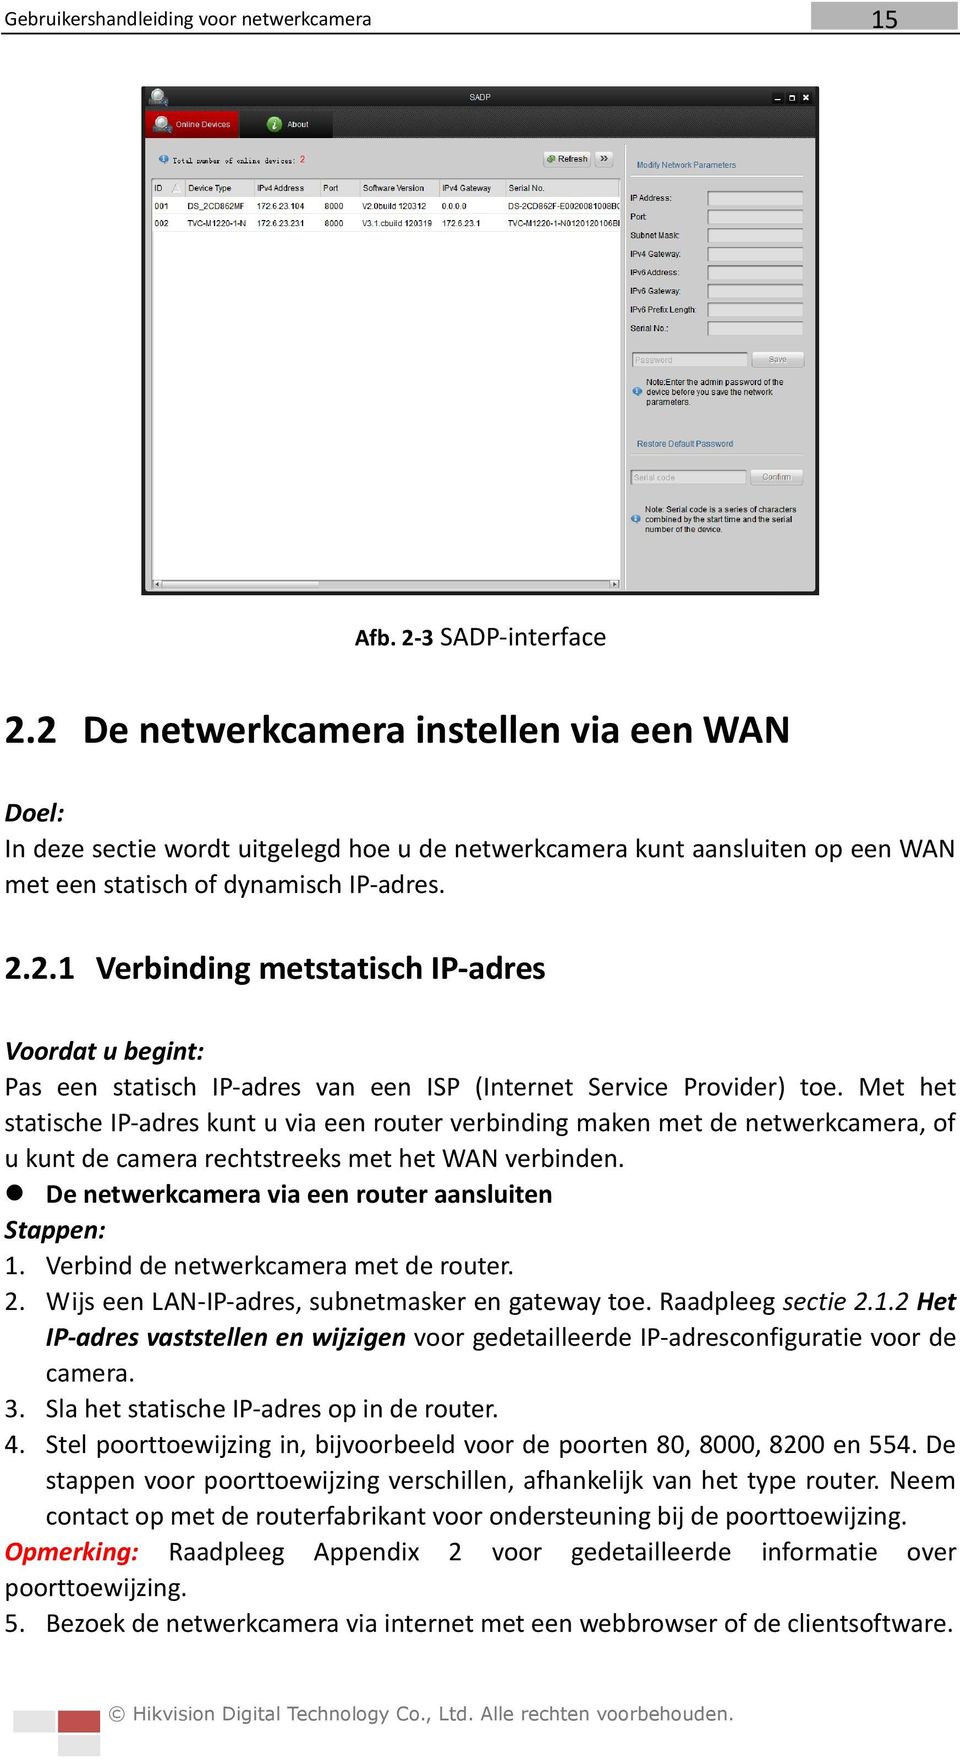 Verbind de netwerkcamera met de router. 2. Wijs een LAN-IP-adres, subnetmasker en gateway toe. Raadpleeg sectie 2.1.